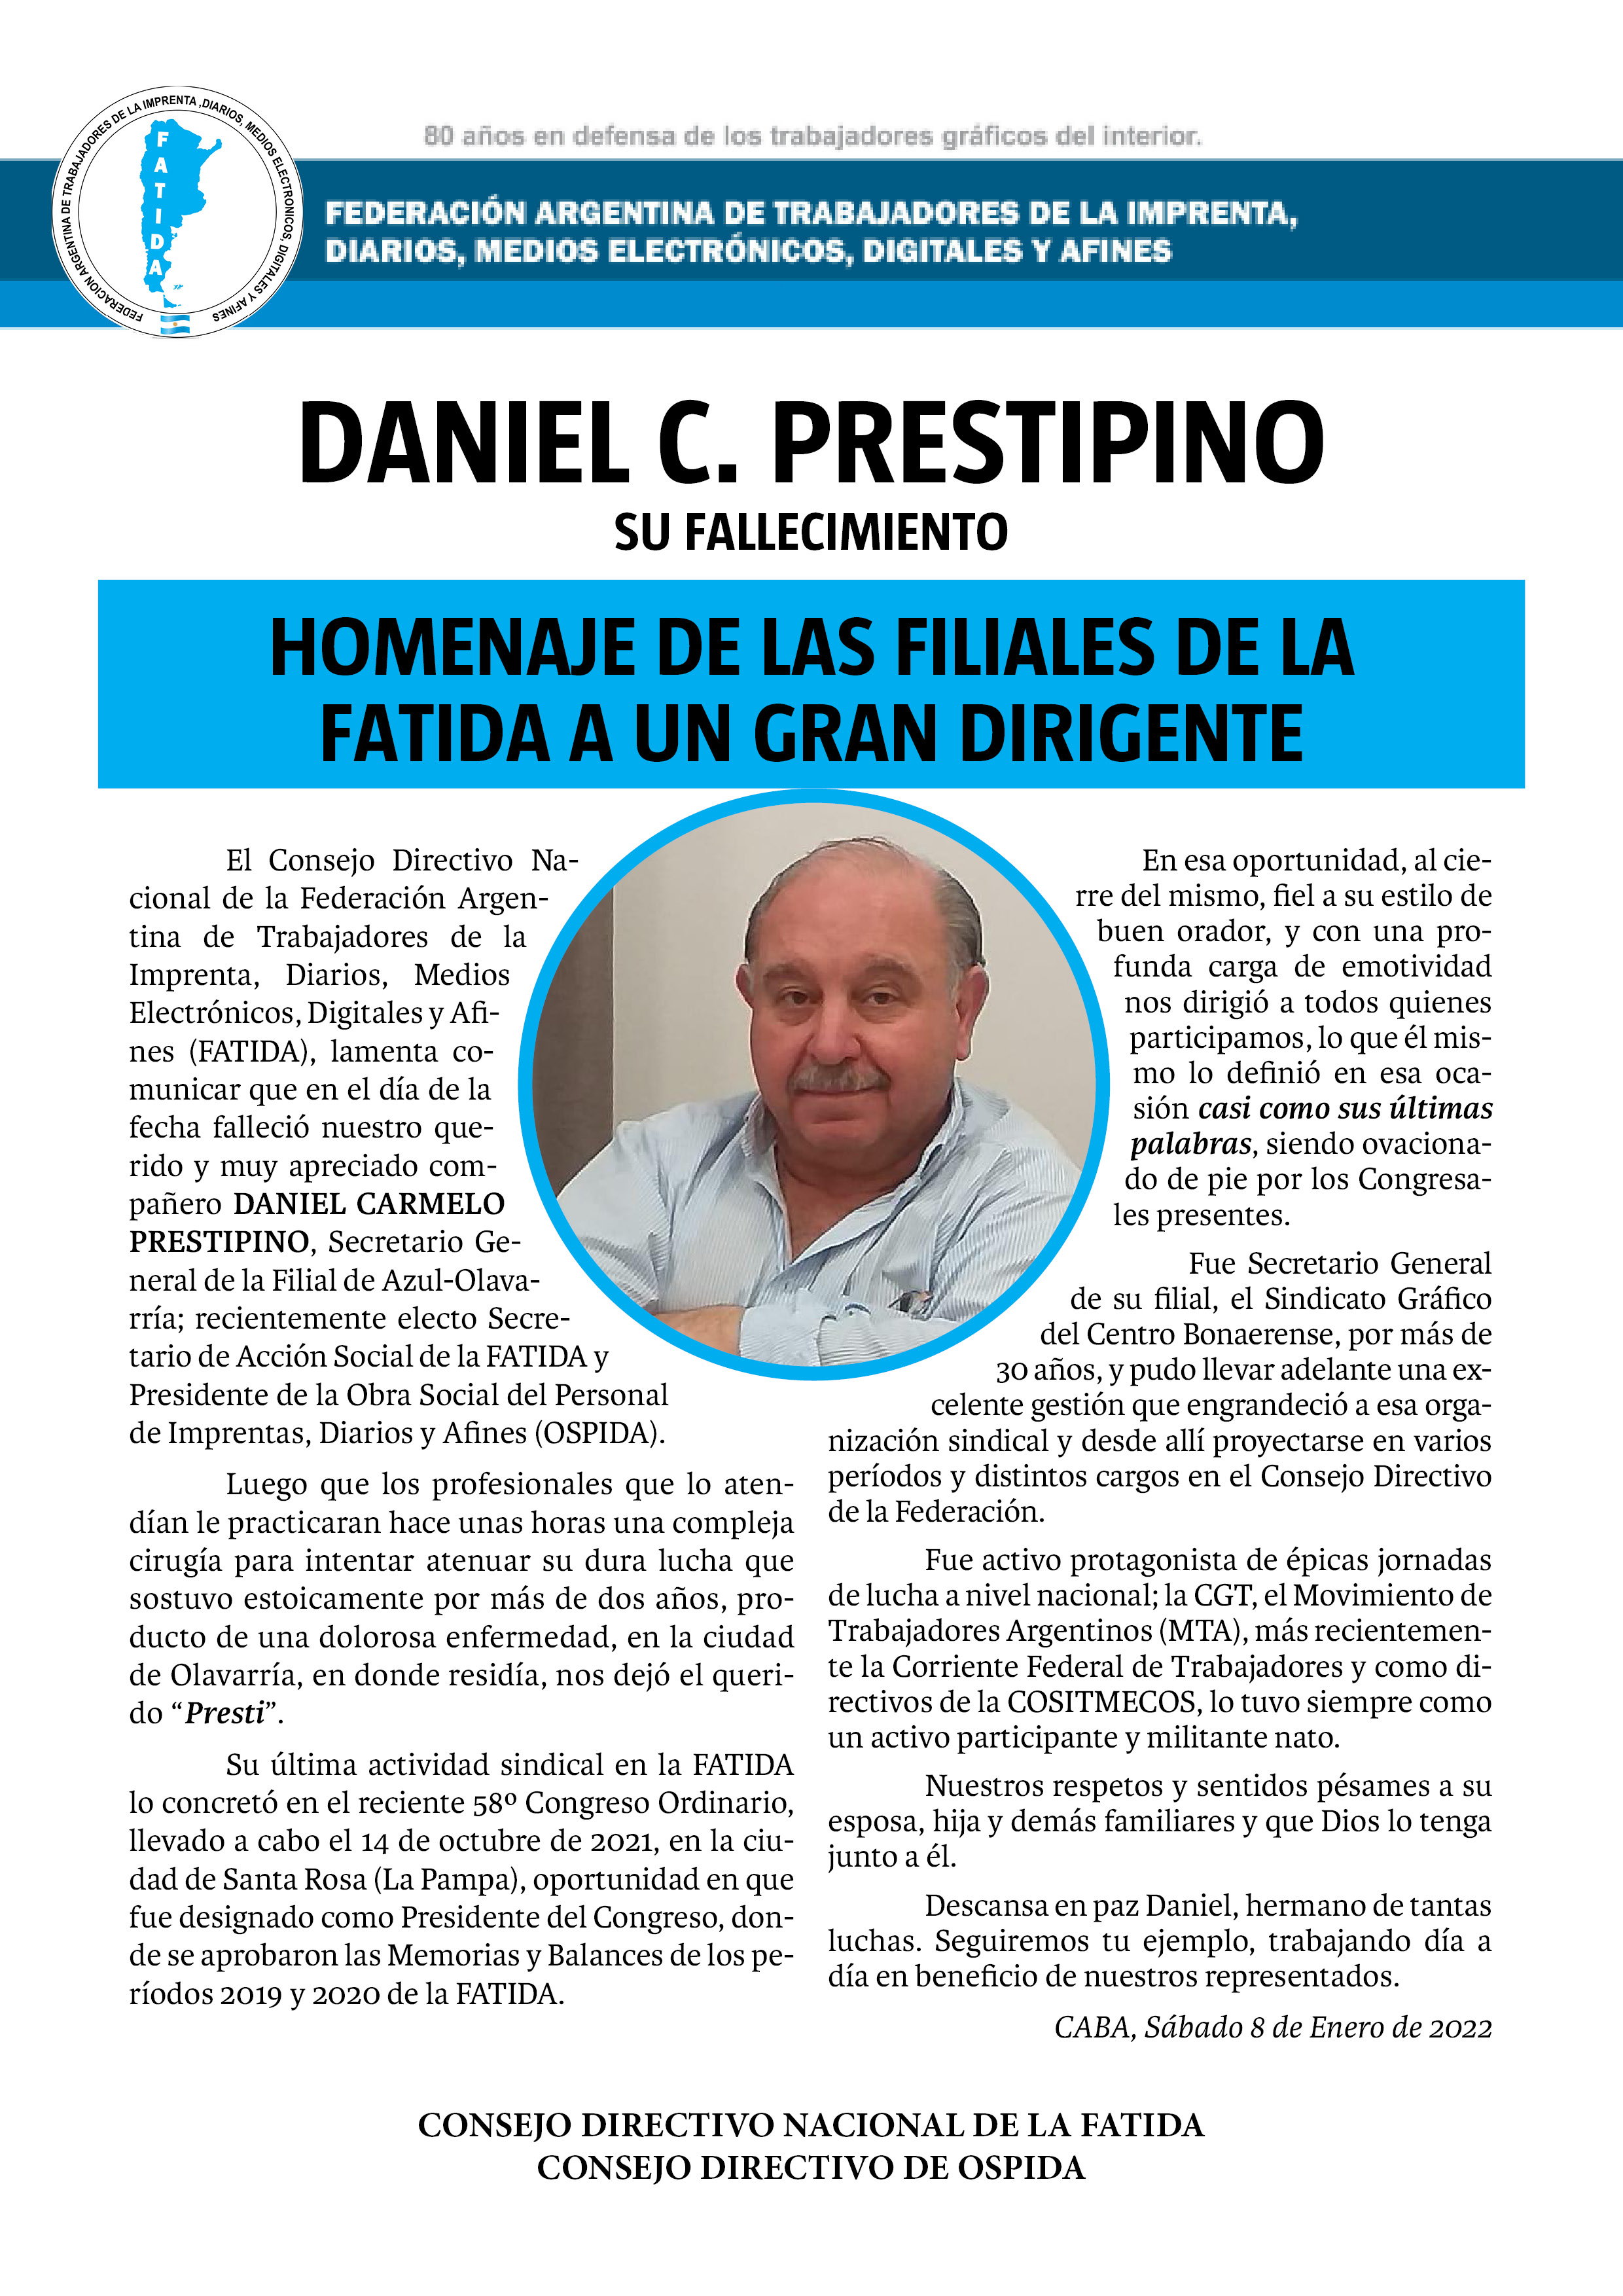 DANIEL C. PRESTIPINO (Su fallecimiento) Homenaje de las filiales de la FATIDA a un gran dirigente